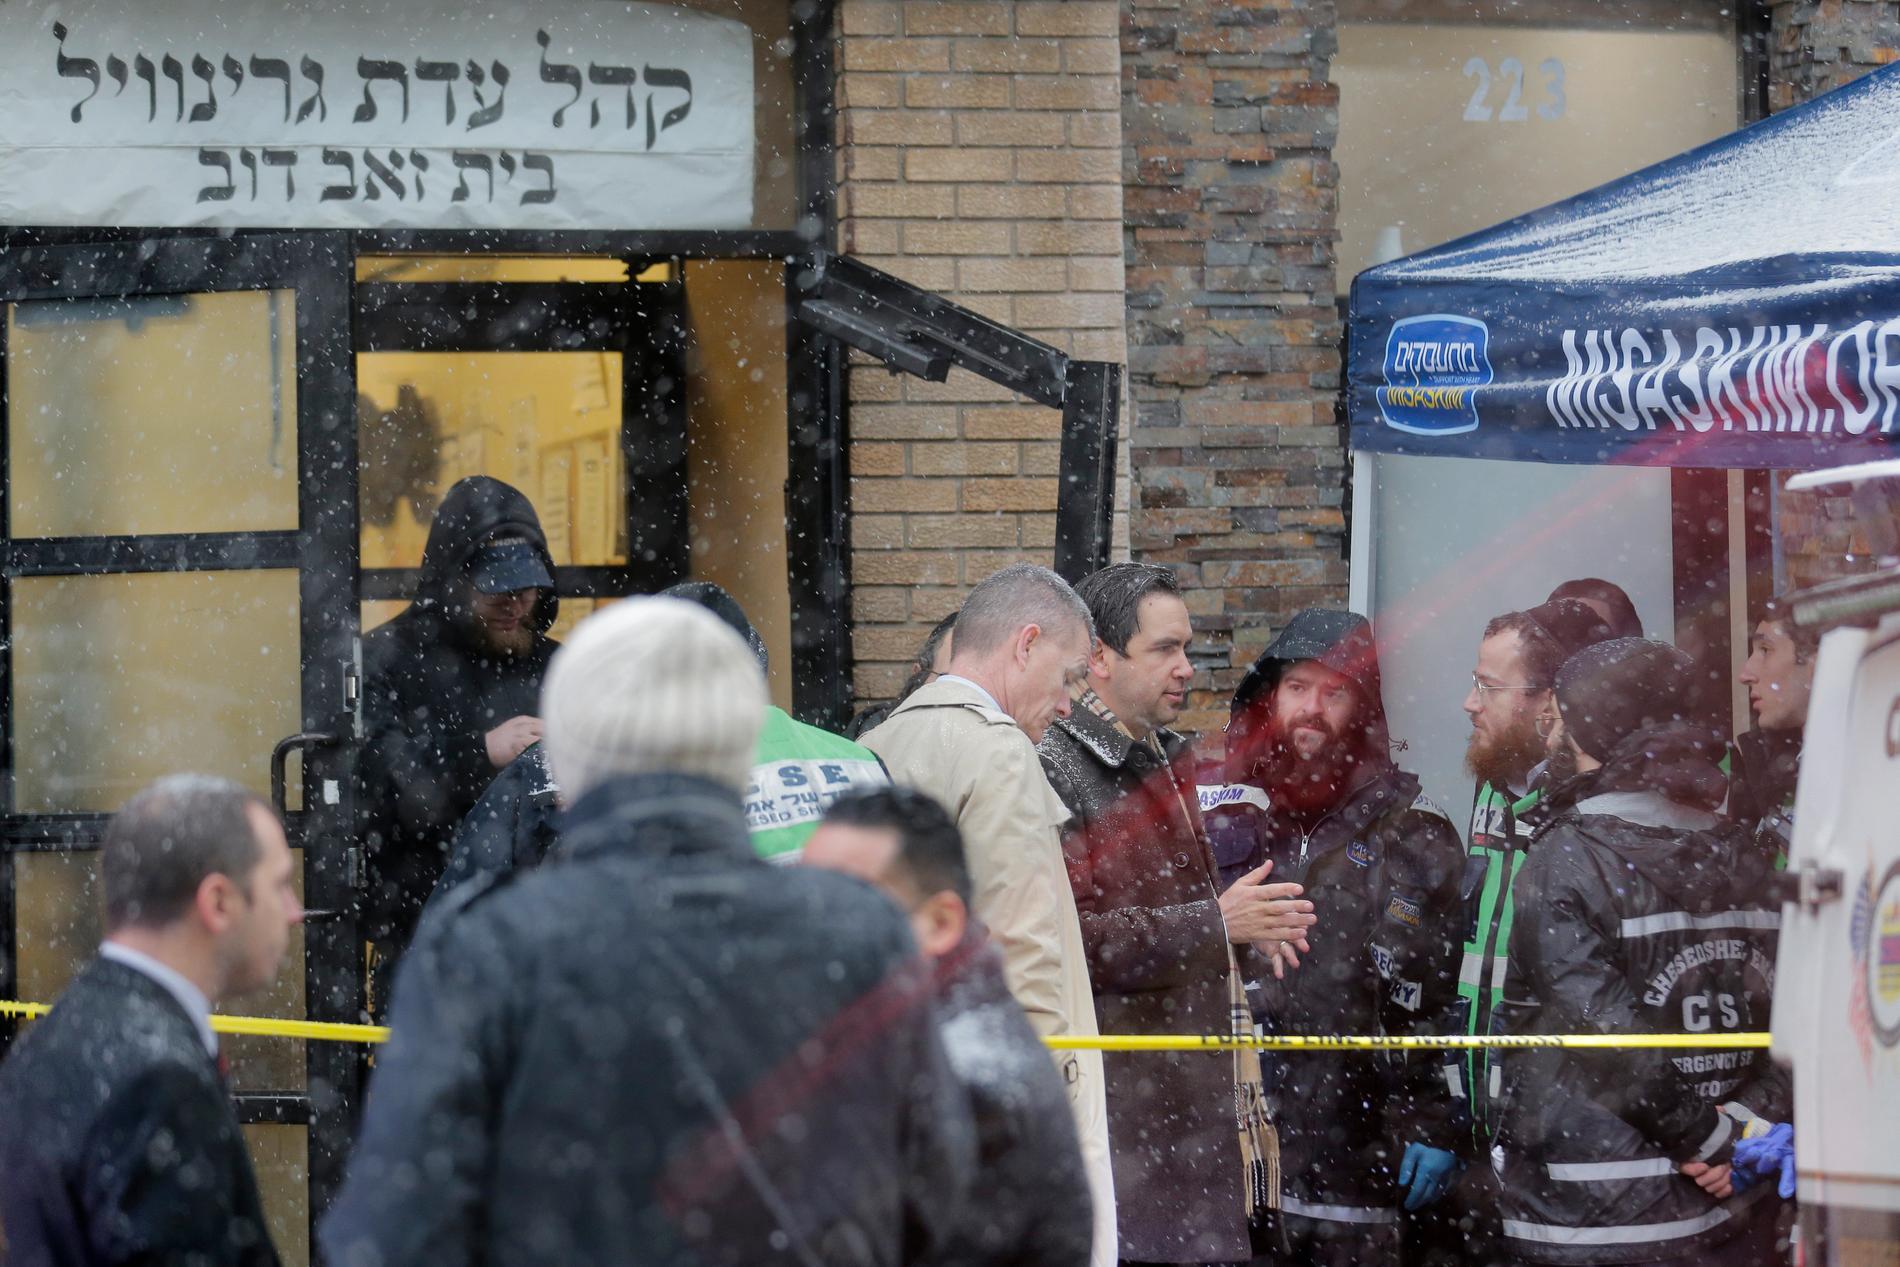 Jersey Citys borgmästare Steven Fulop, i mörk rock i mitten av bilden, utanför den judiska butiken. Fulop har gett polisen direktiv om att öka bevakningen i områden där många judar bor.